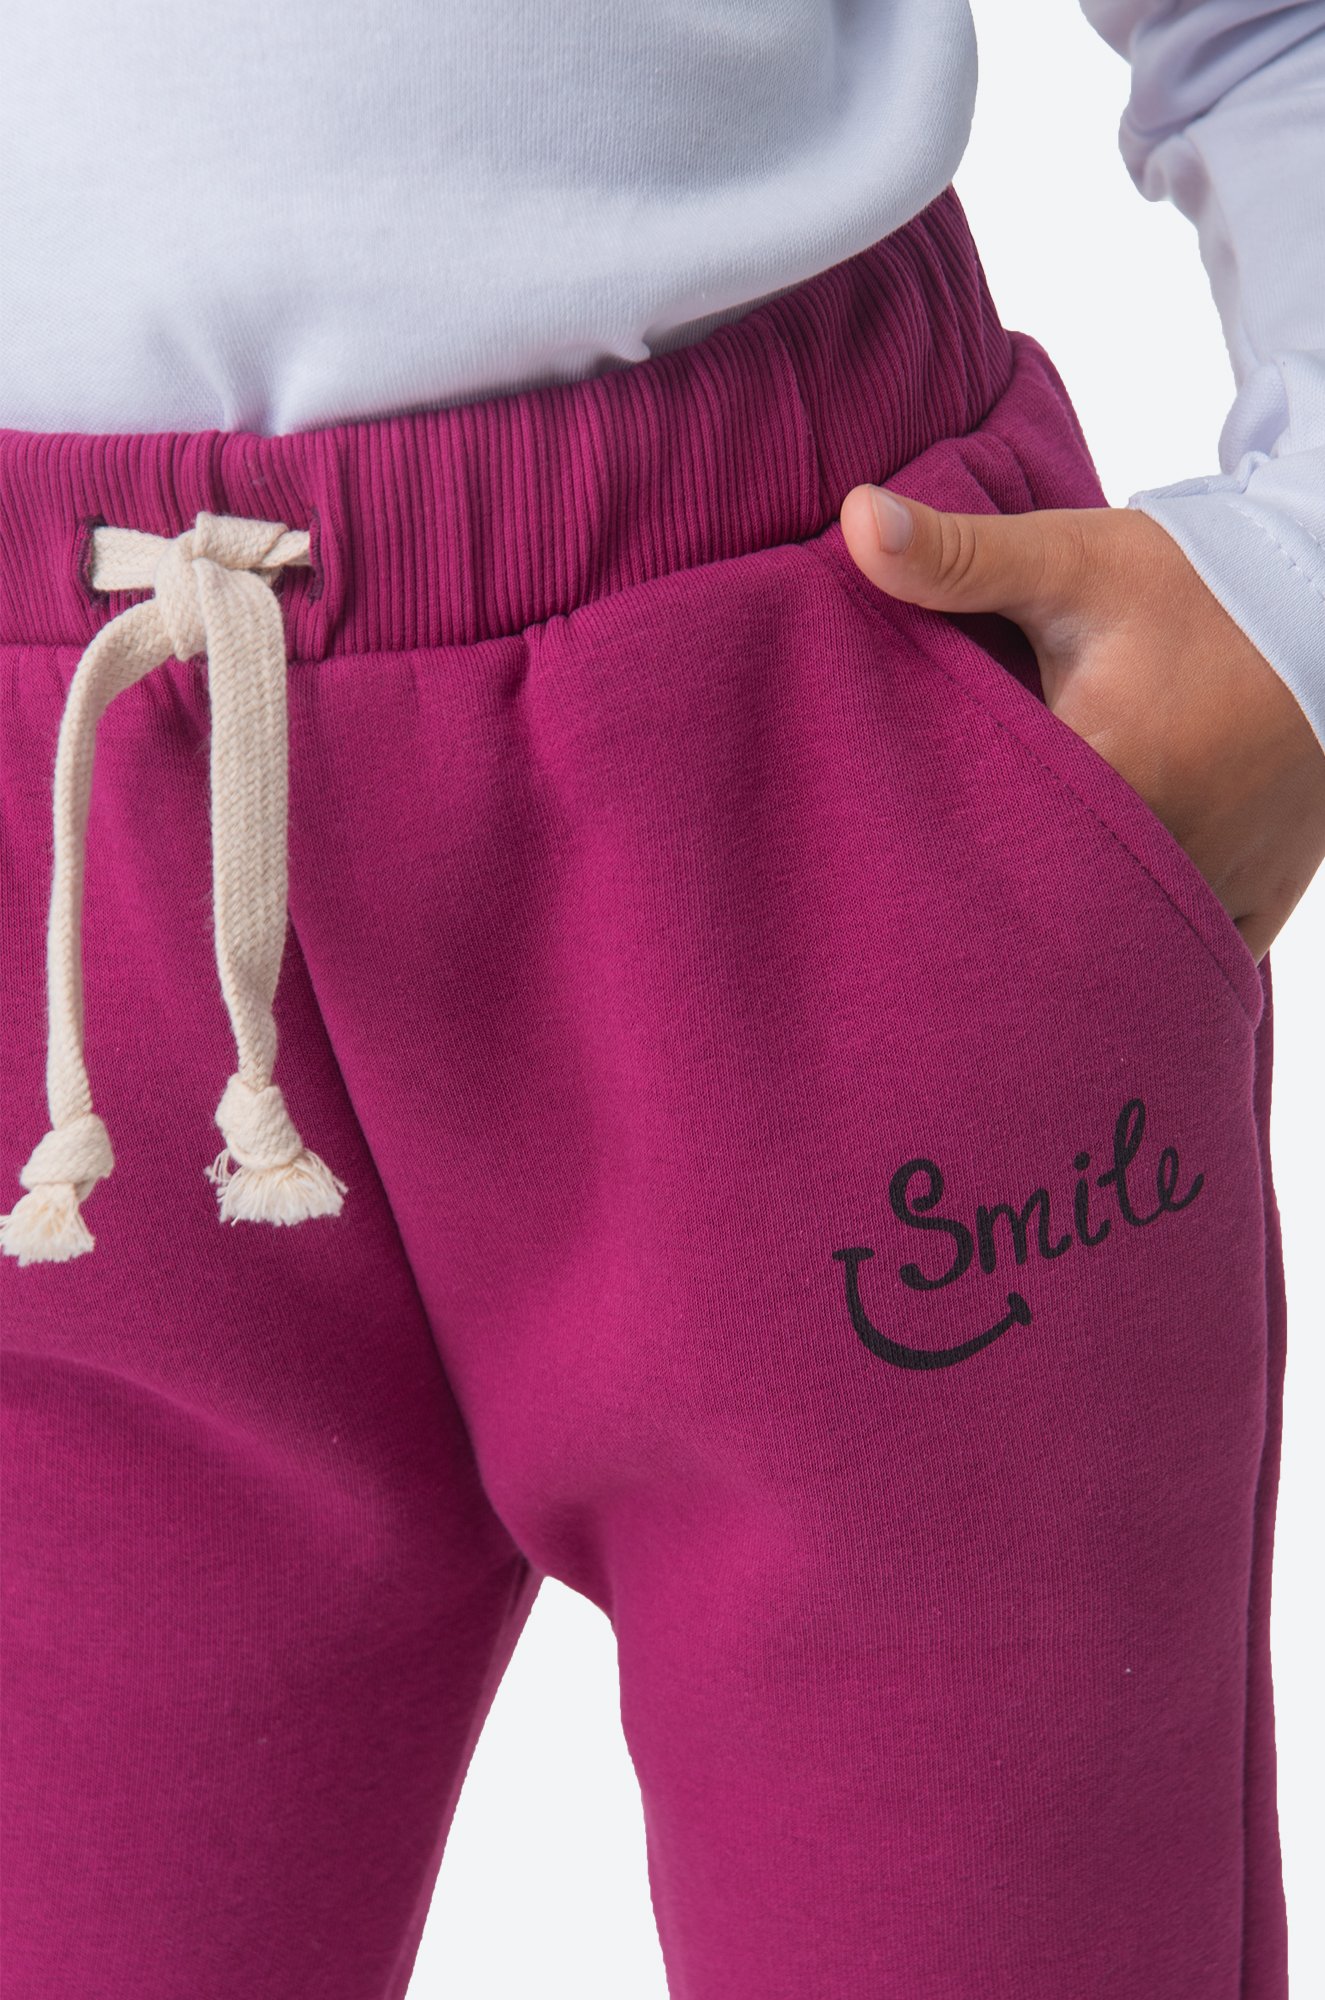 Теплые брюки из футера трехнитки с начесом для девочки Bonito